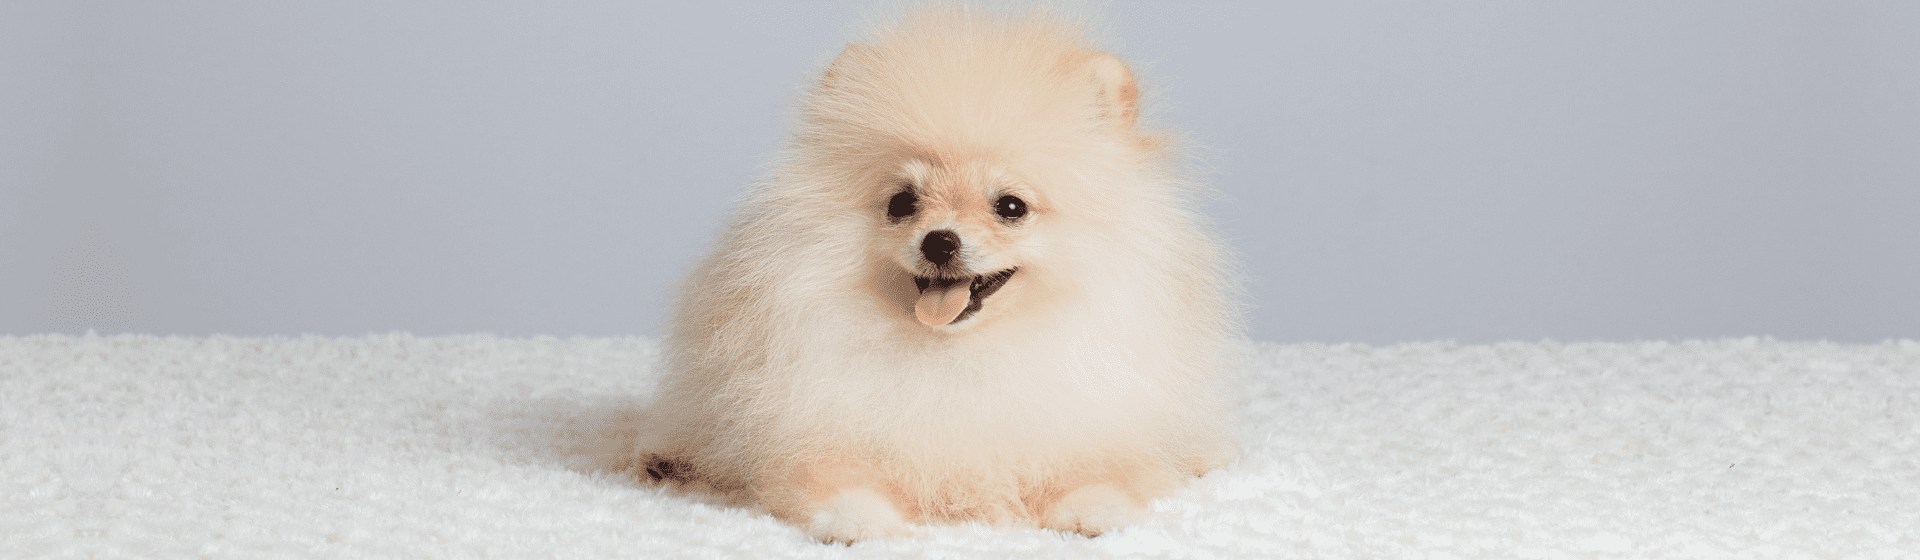 Cachorros pequenos peludos: 8 raças de cães de pequeno porte